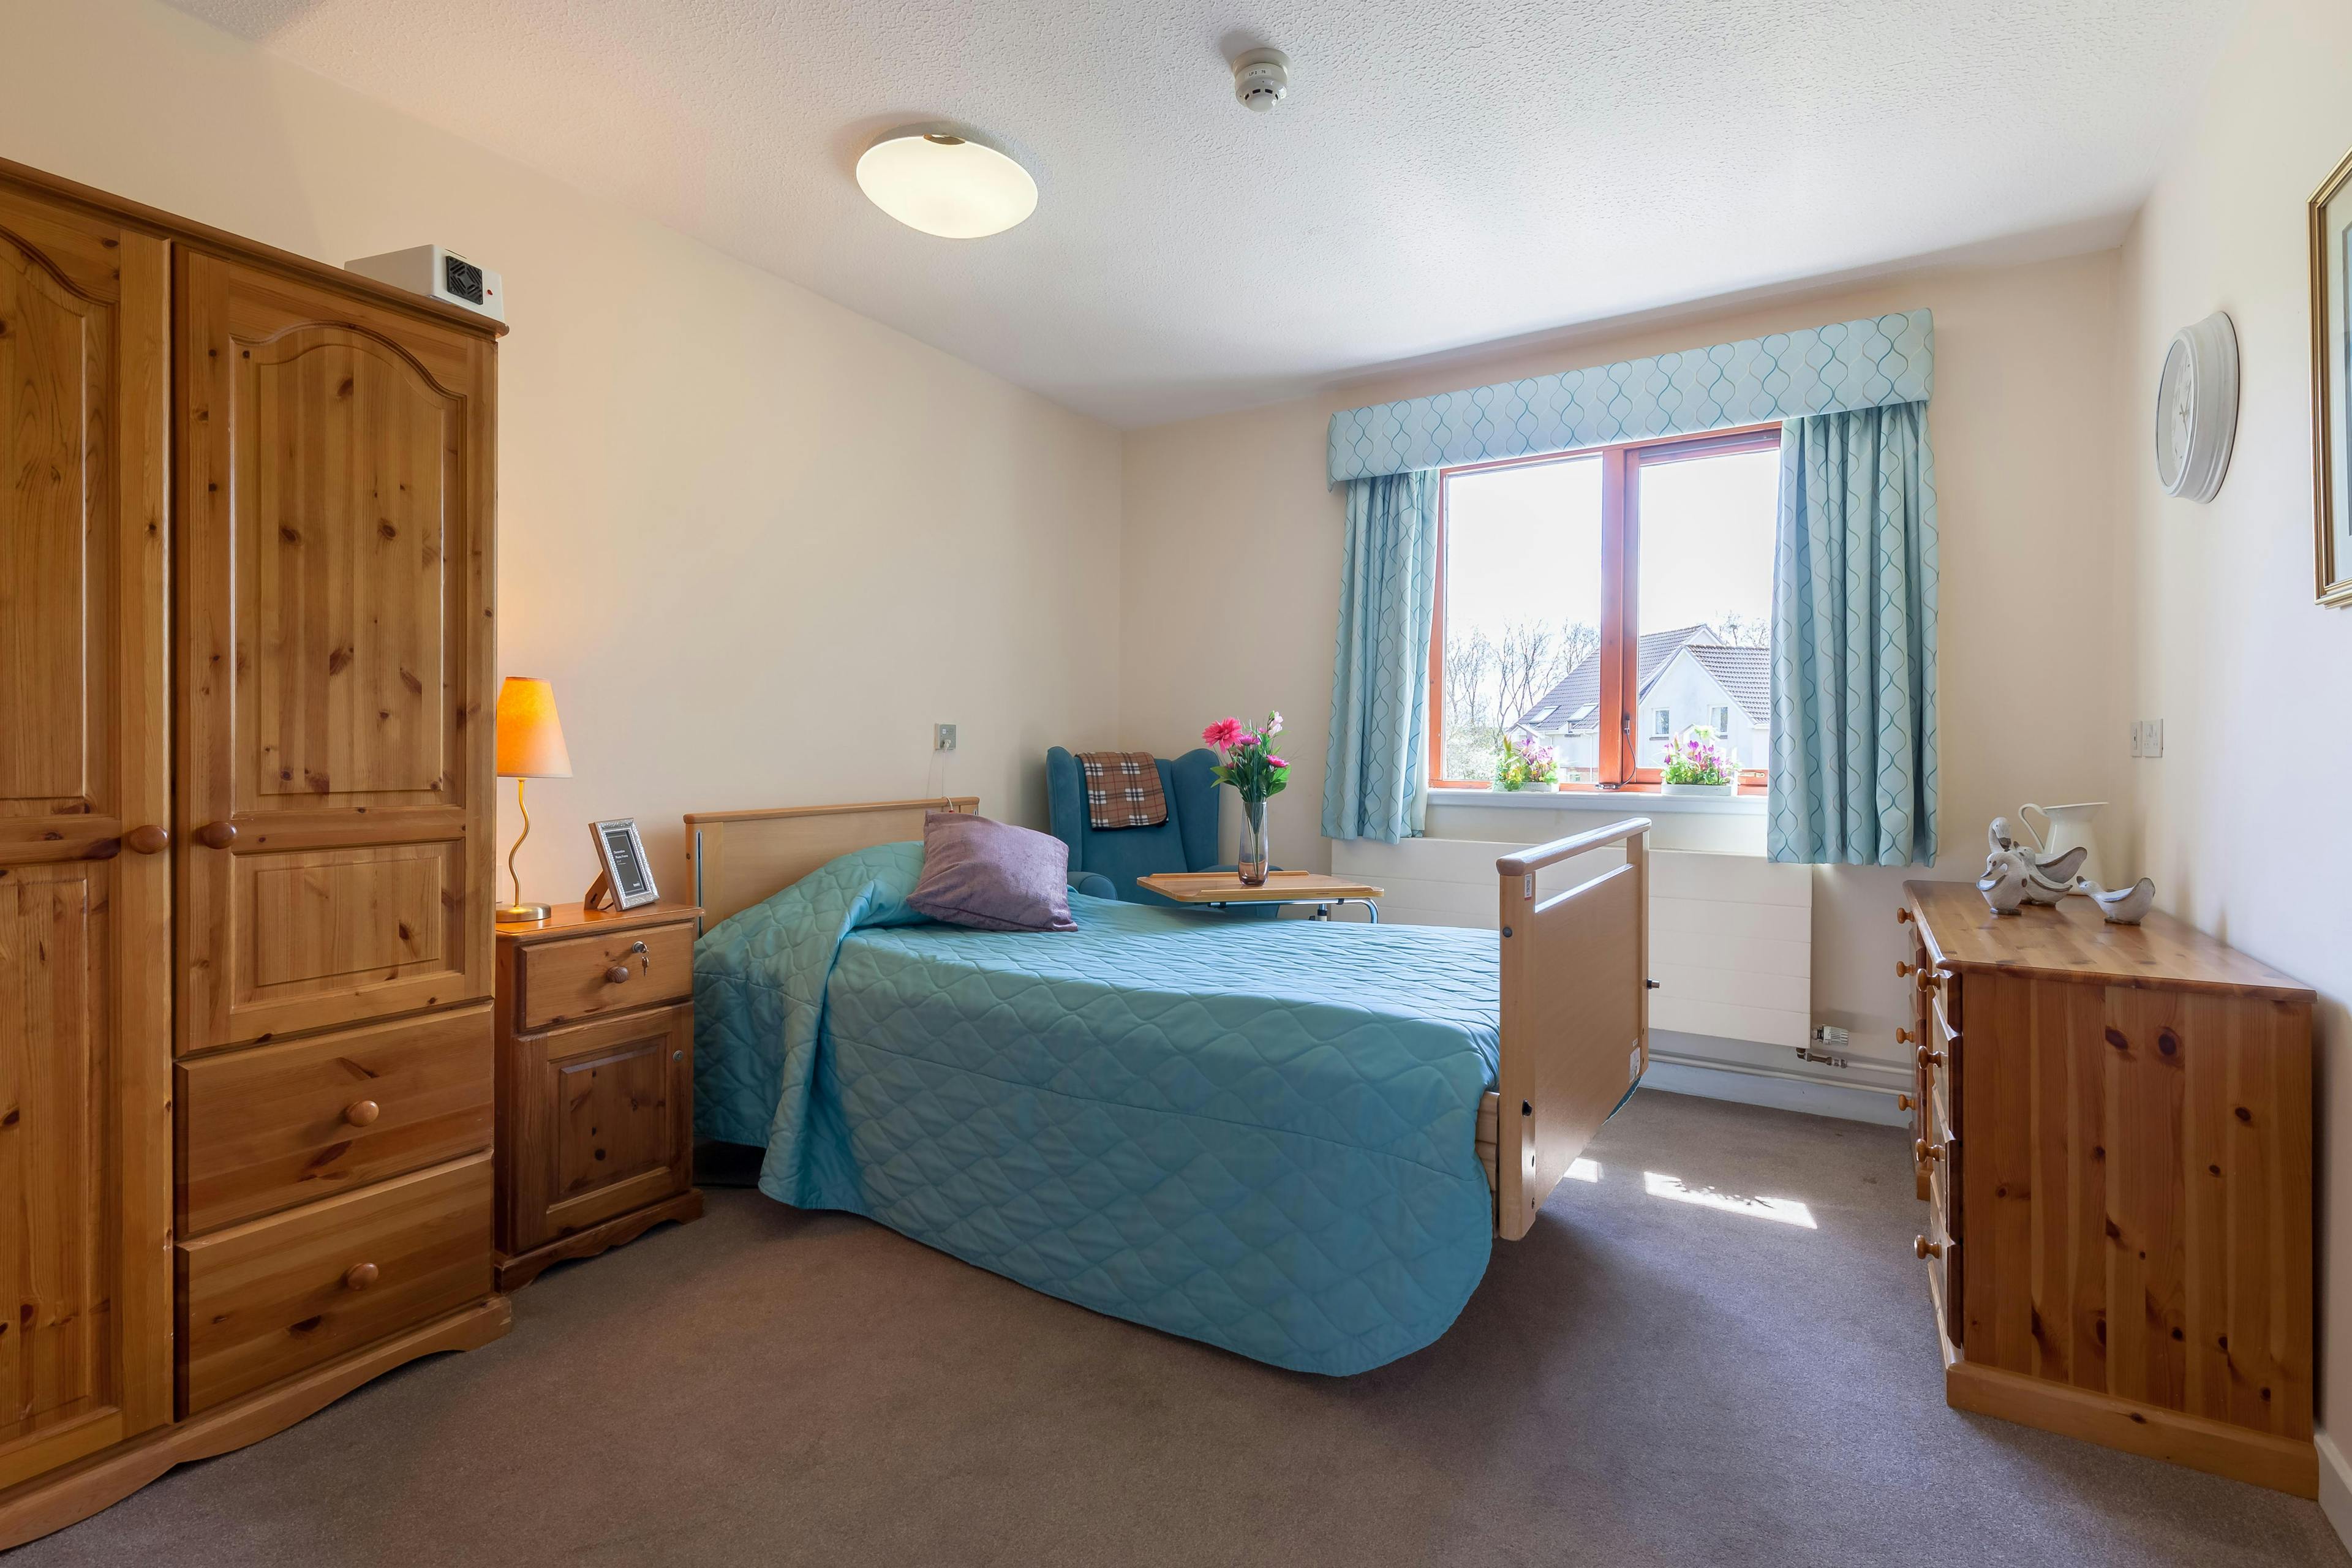 Bedroom in Ochil Care Home in Perth, Scotland